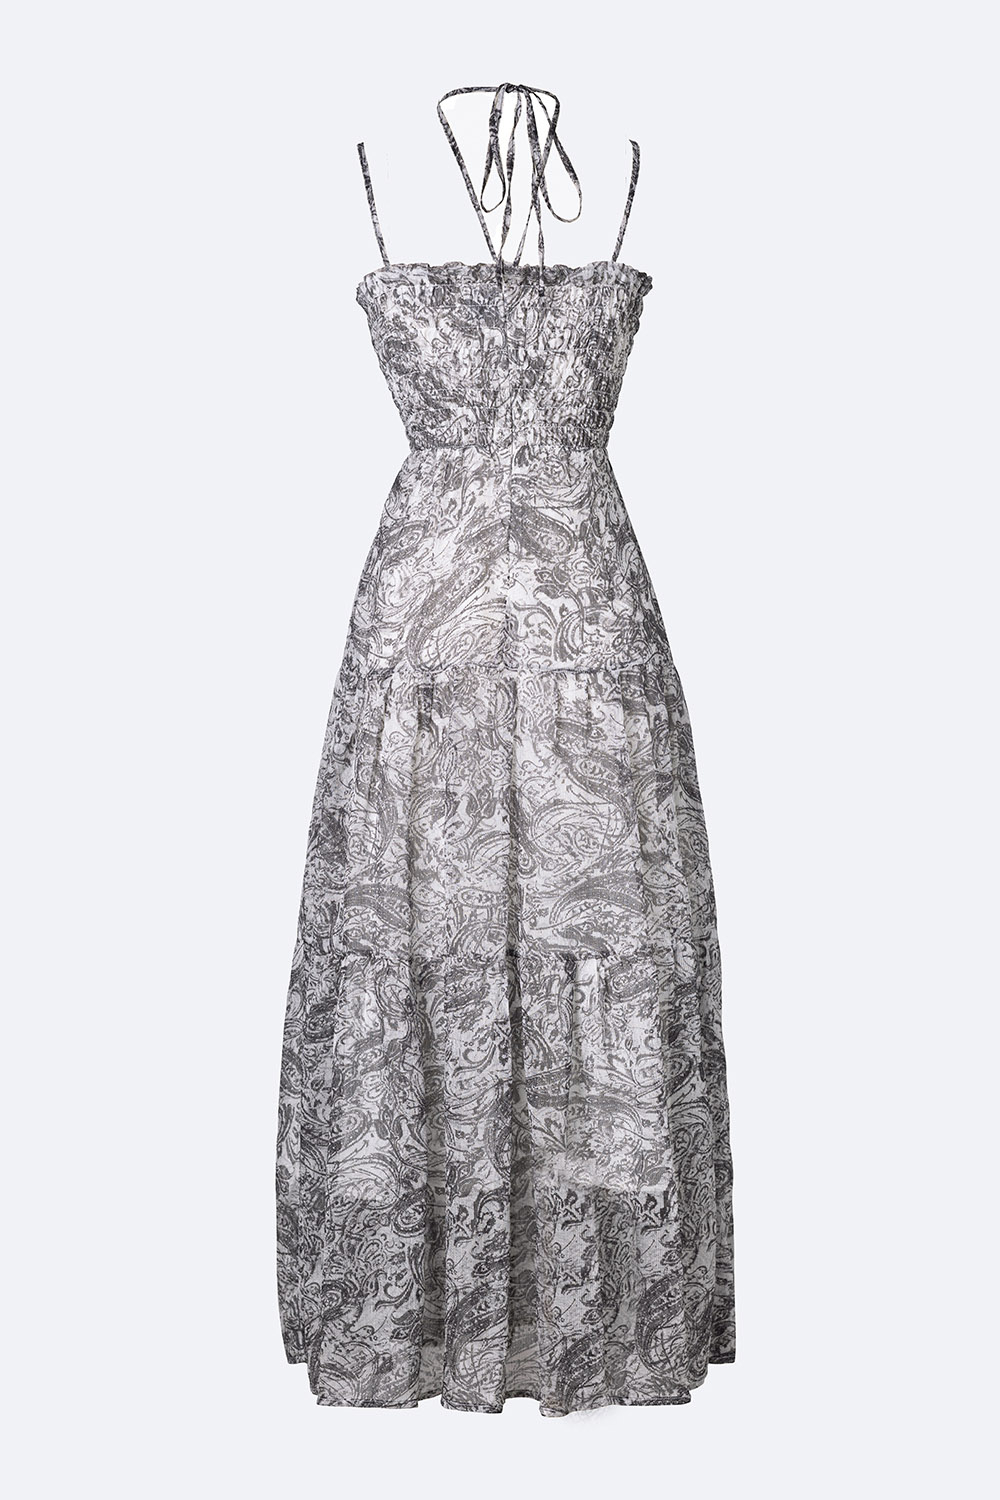 Váy maxi hoa nhí 2 dây màu sáng họa tiết nhẹ nhàng nữ tính  MX054 giá rẻ  nhất tháng 72023